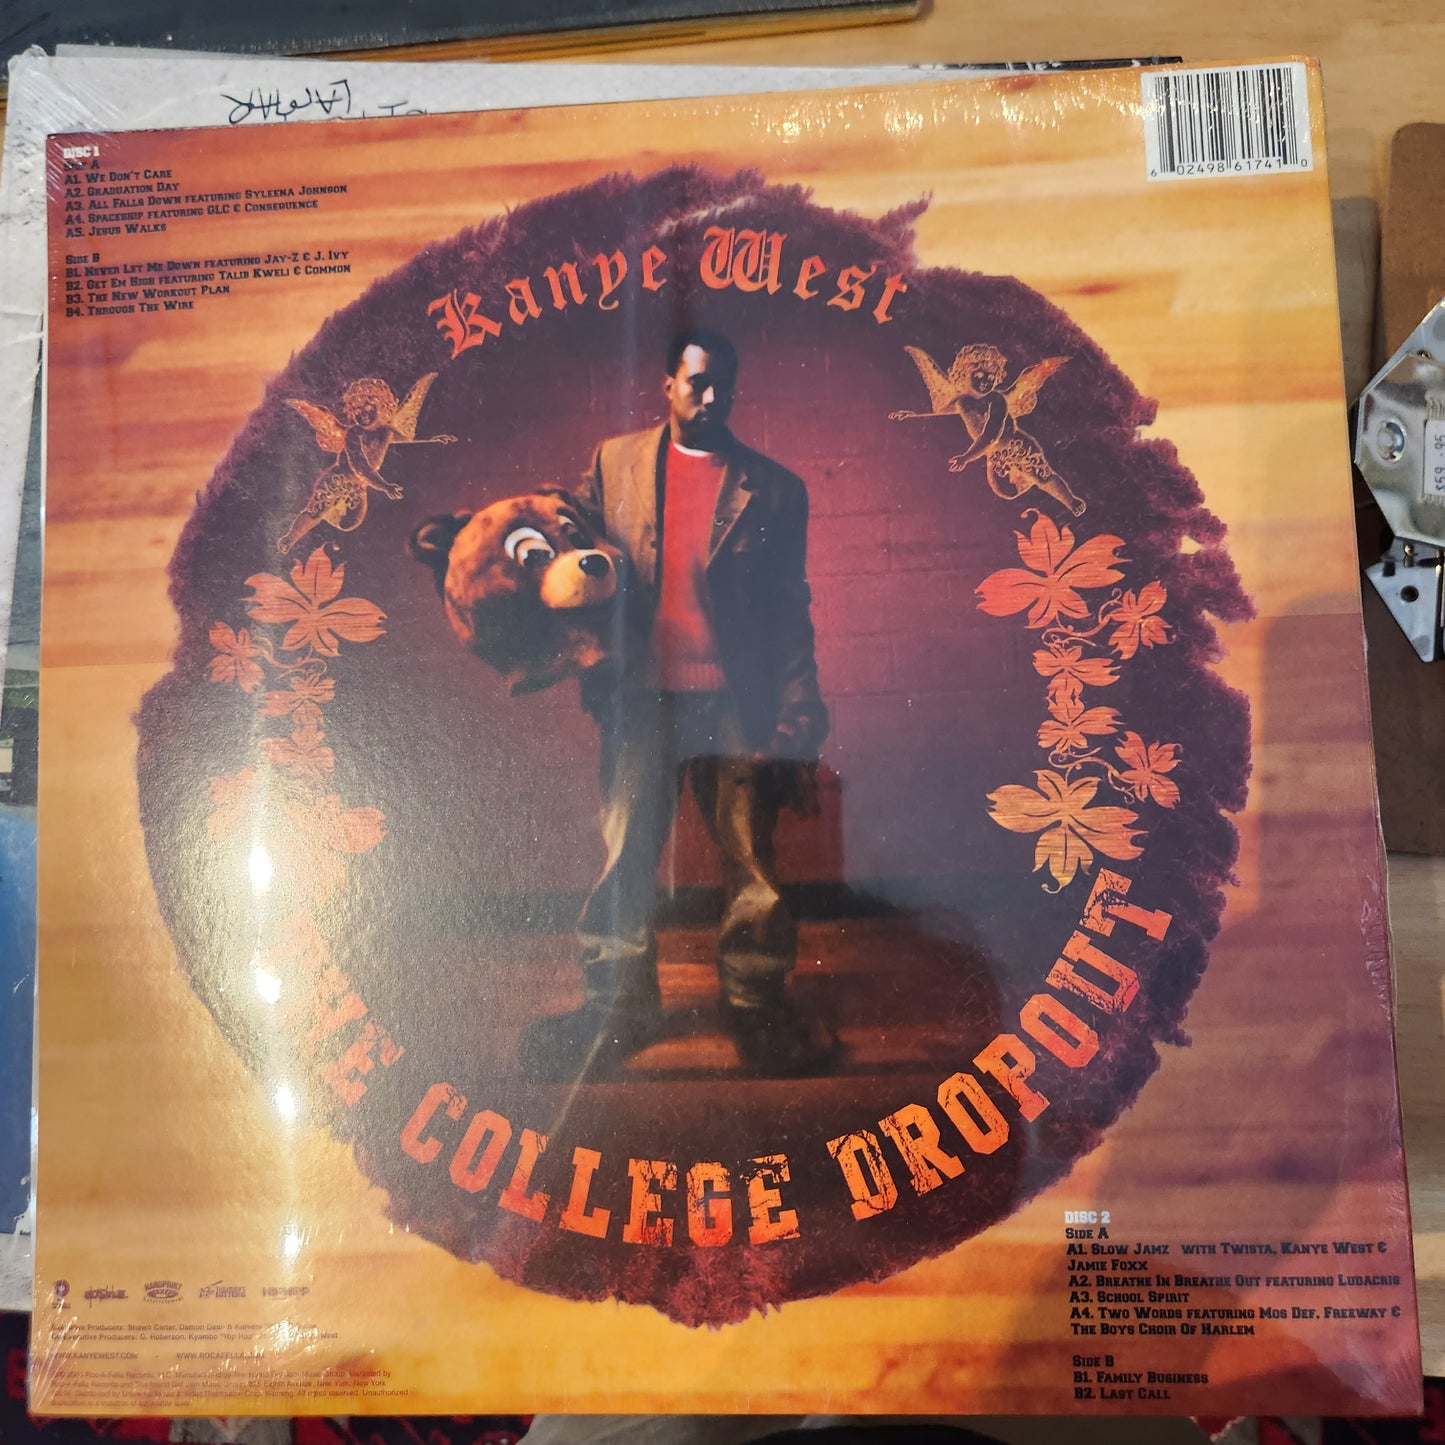 Kanye West - The College Dropout - Vinyl LP